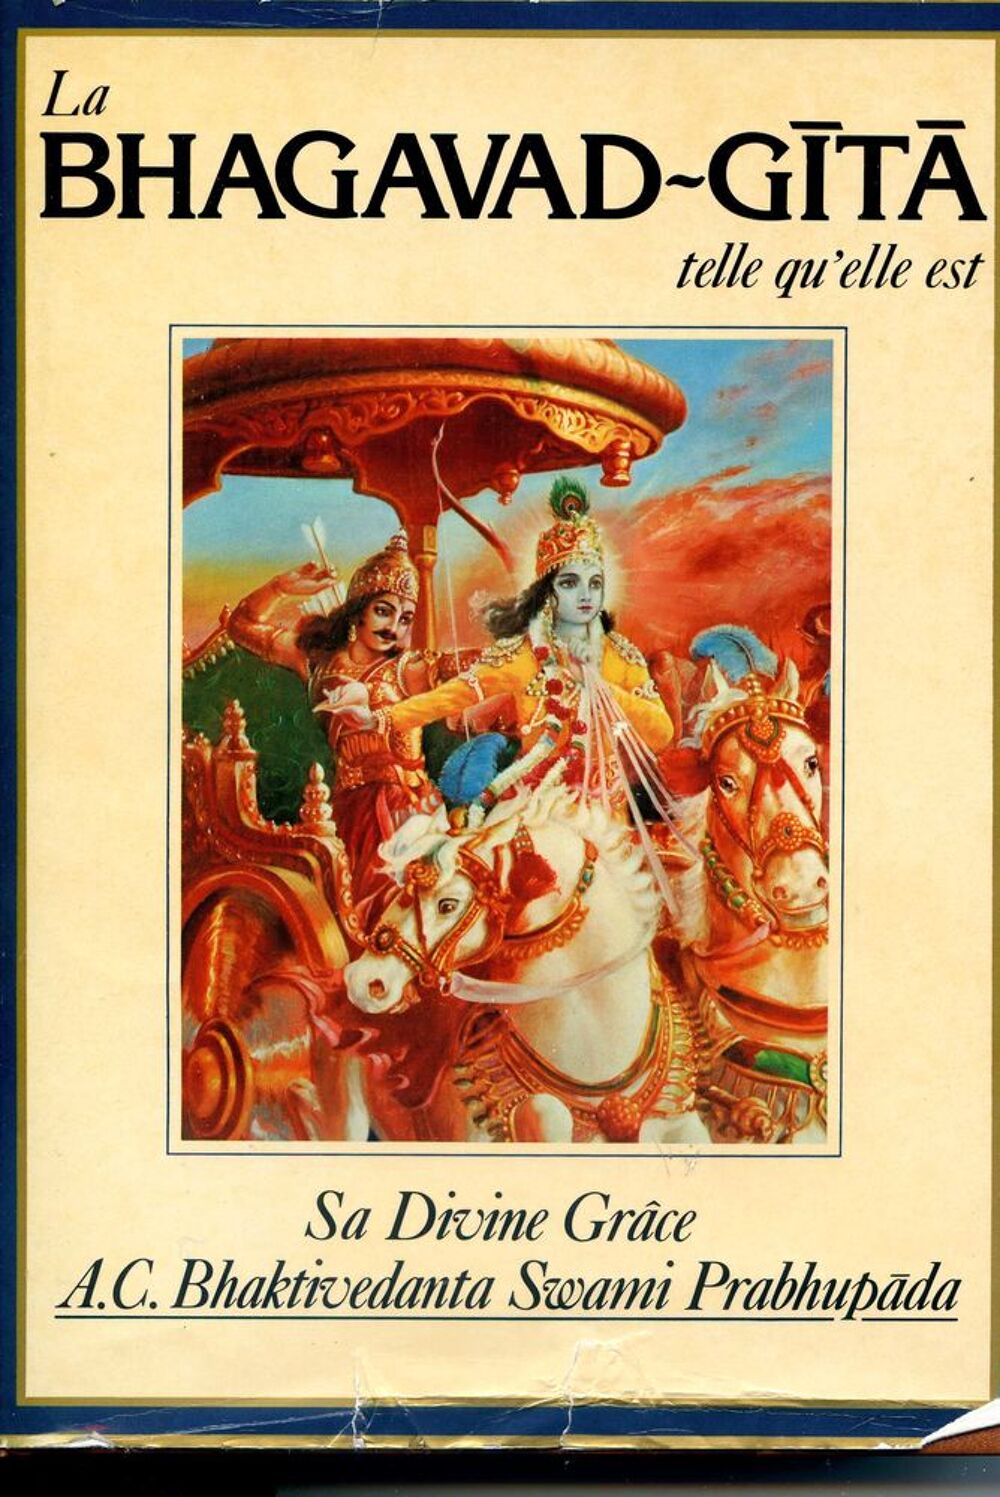 La Bhagavad-Gita telle qu'elle est, Livres et BD